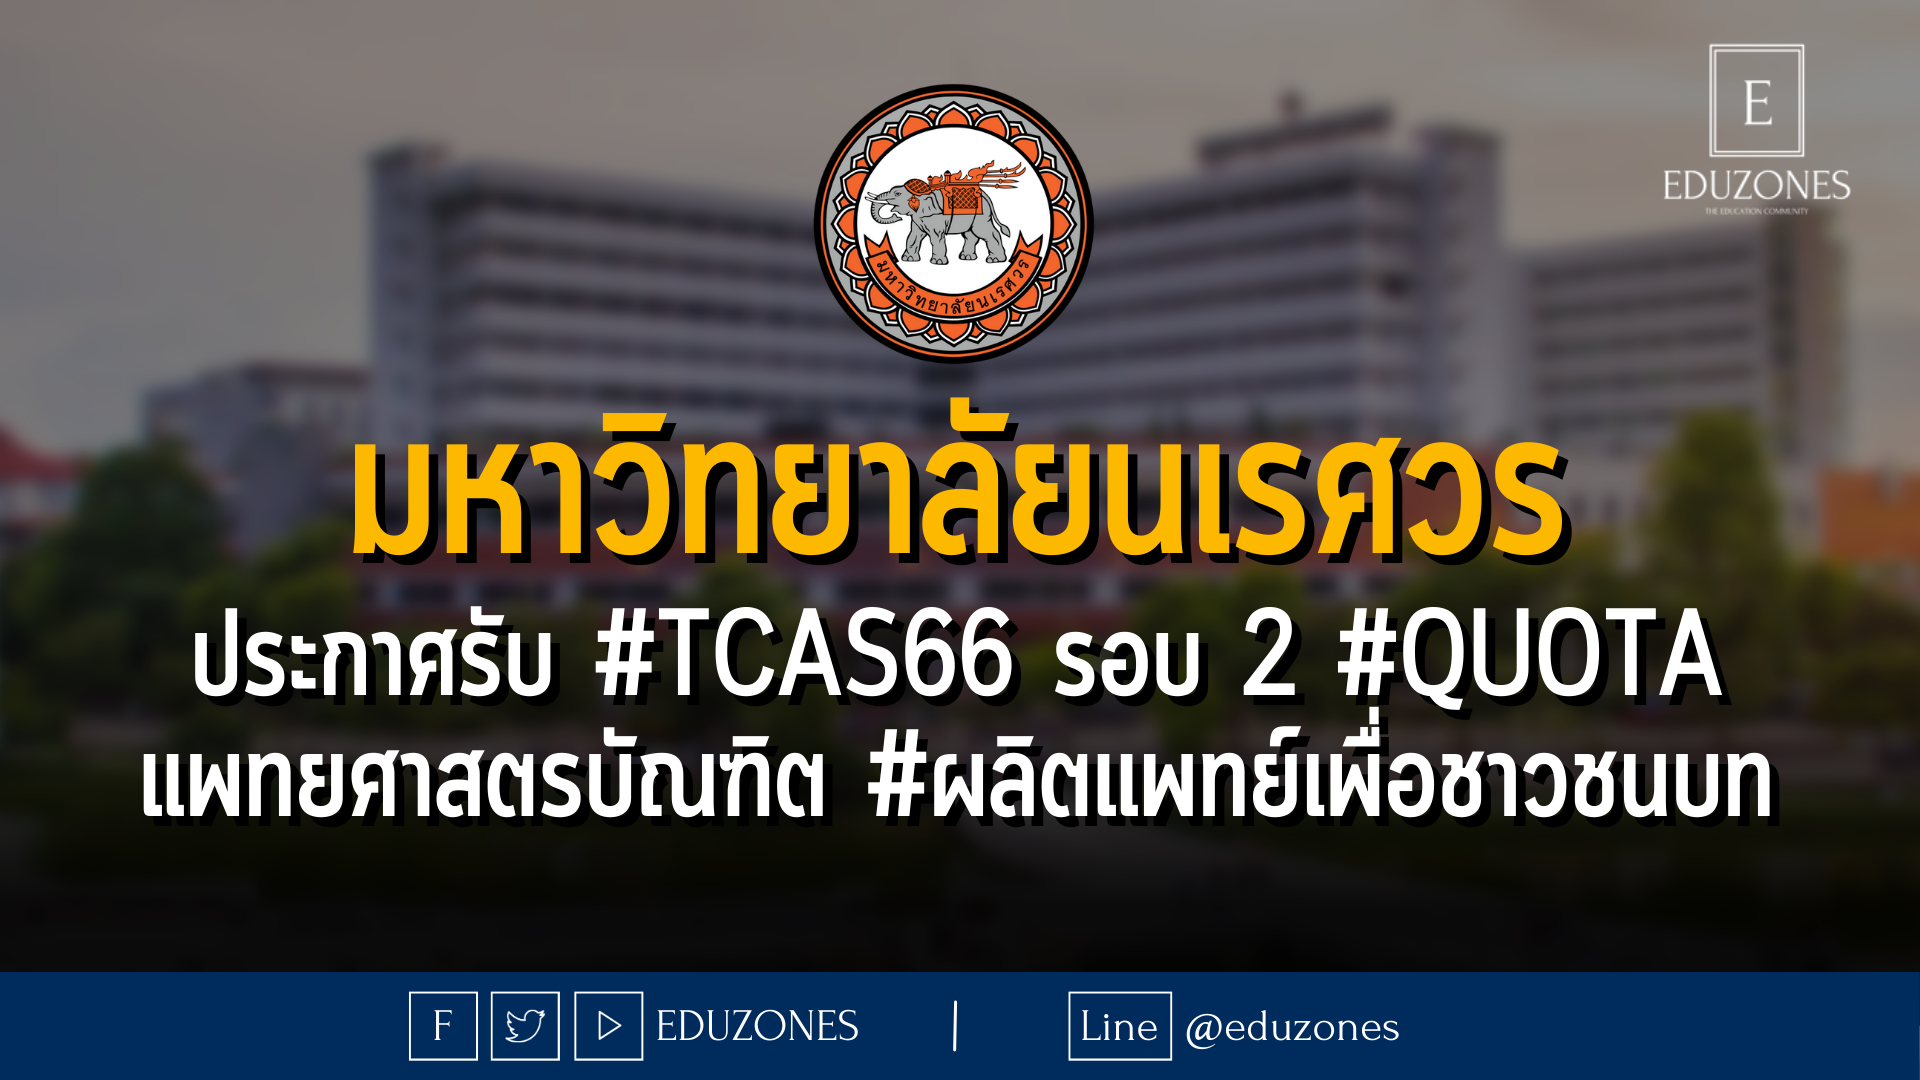 มหาวิทยาลัยนเรศวร ประกาศรับ #TCAS66 รอบ 2 #QUOTA แพทยศาสตรบัณฑิต #ผลิตแพทย์เพื่อชาวชนบท